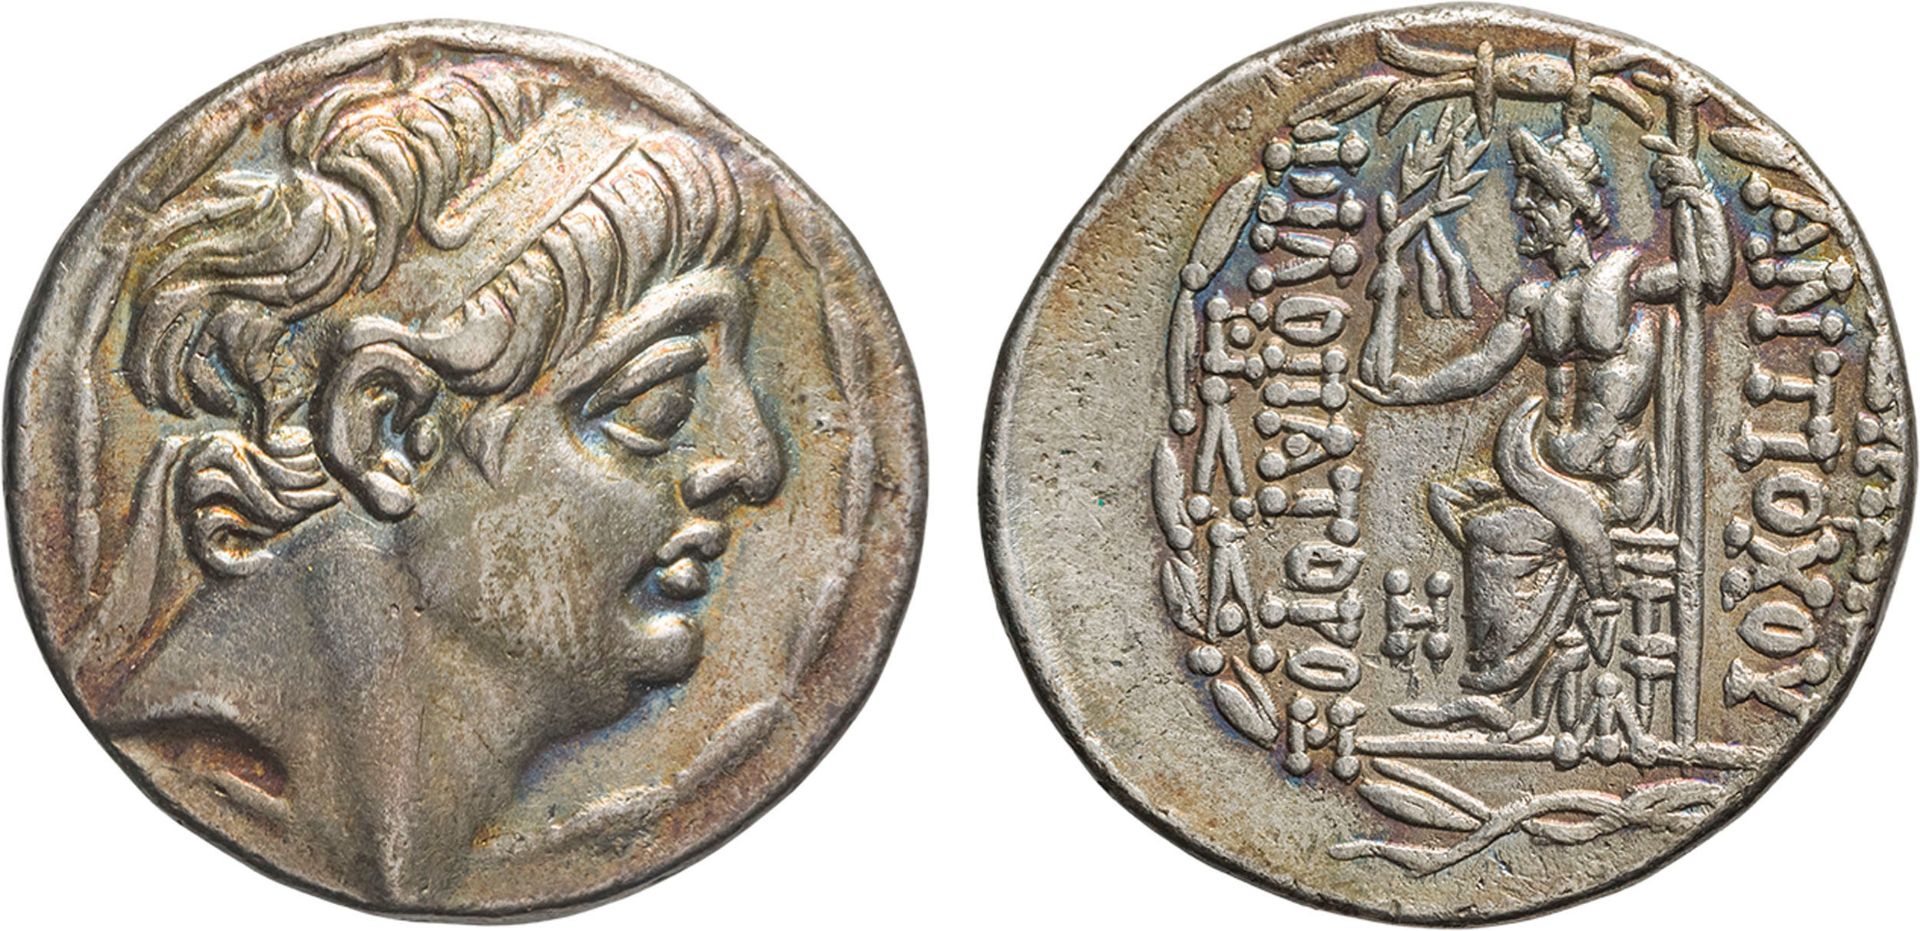 MONETE GRECHE. RE SELEUCIDI. ANTIOCO IX (116-95 A.C.). TETRADRACMA